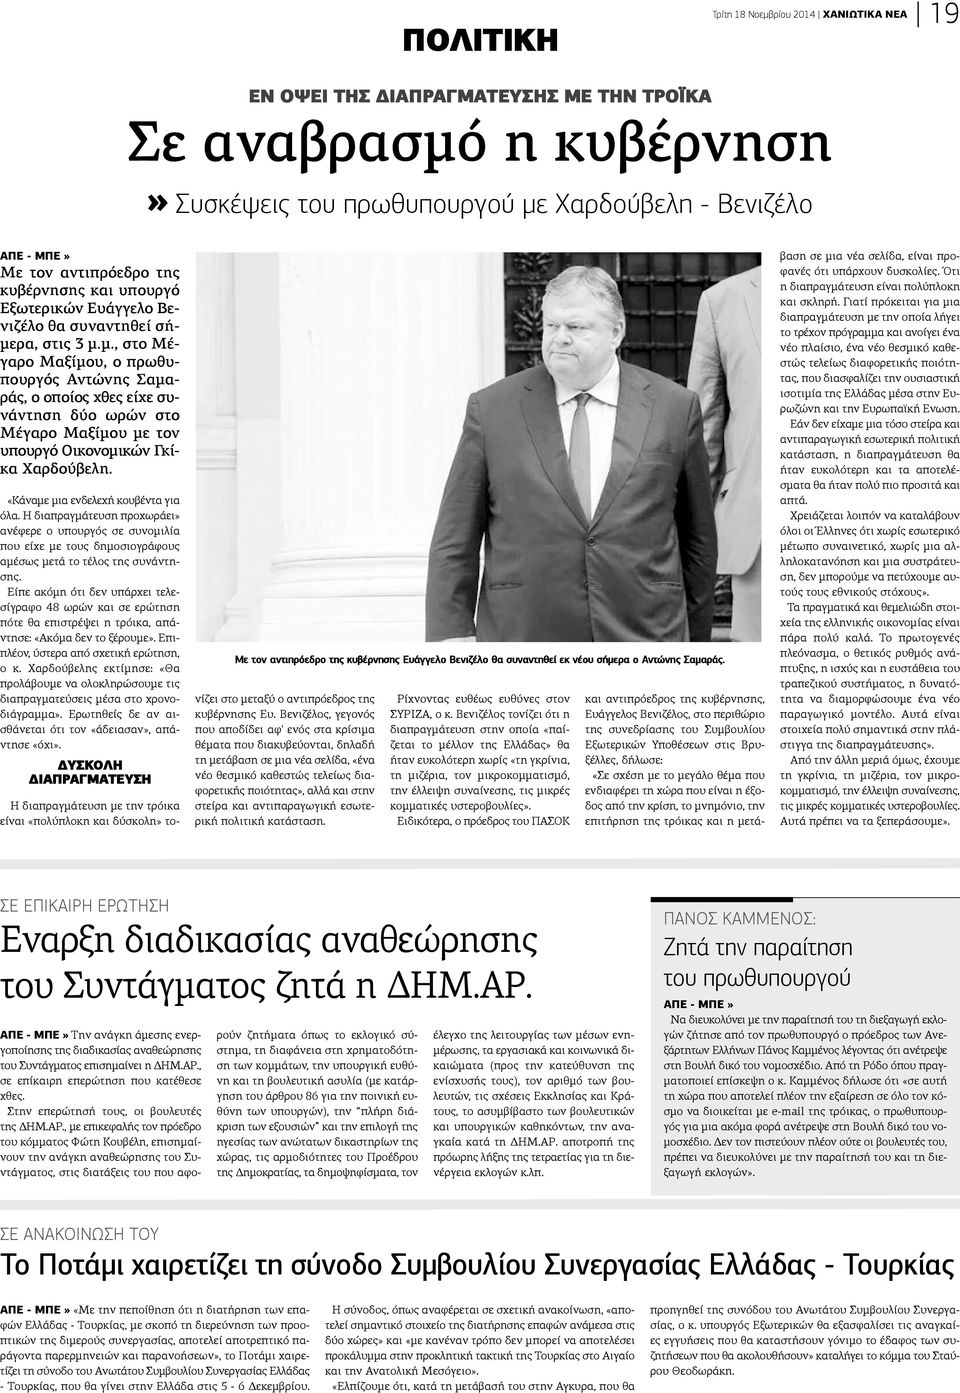 ρα, στις 3 μ.μ., στο Μέγαρο Μαξίμου, ο πρωθυπουργός Αντώνης Σαμαράς, ο οποίος χθες είχε συάντηση δύο ωρών στο έγαρο Μαξίμου με τον πουργό Οικονομικών Γκία Χαρδούβελη.